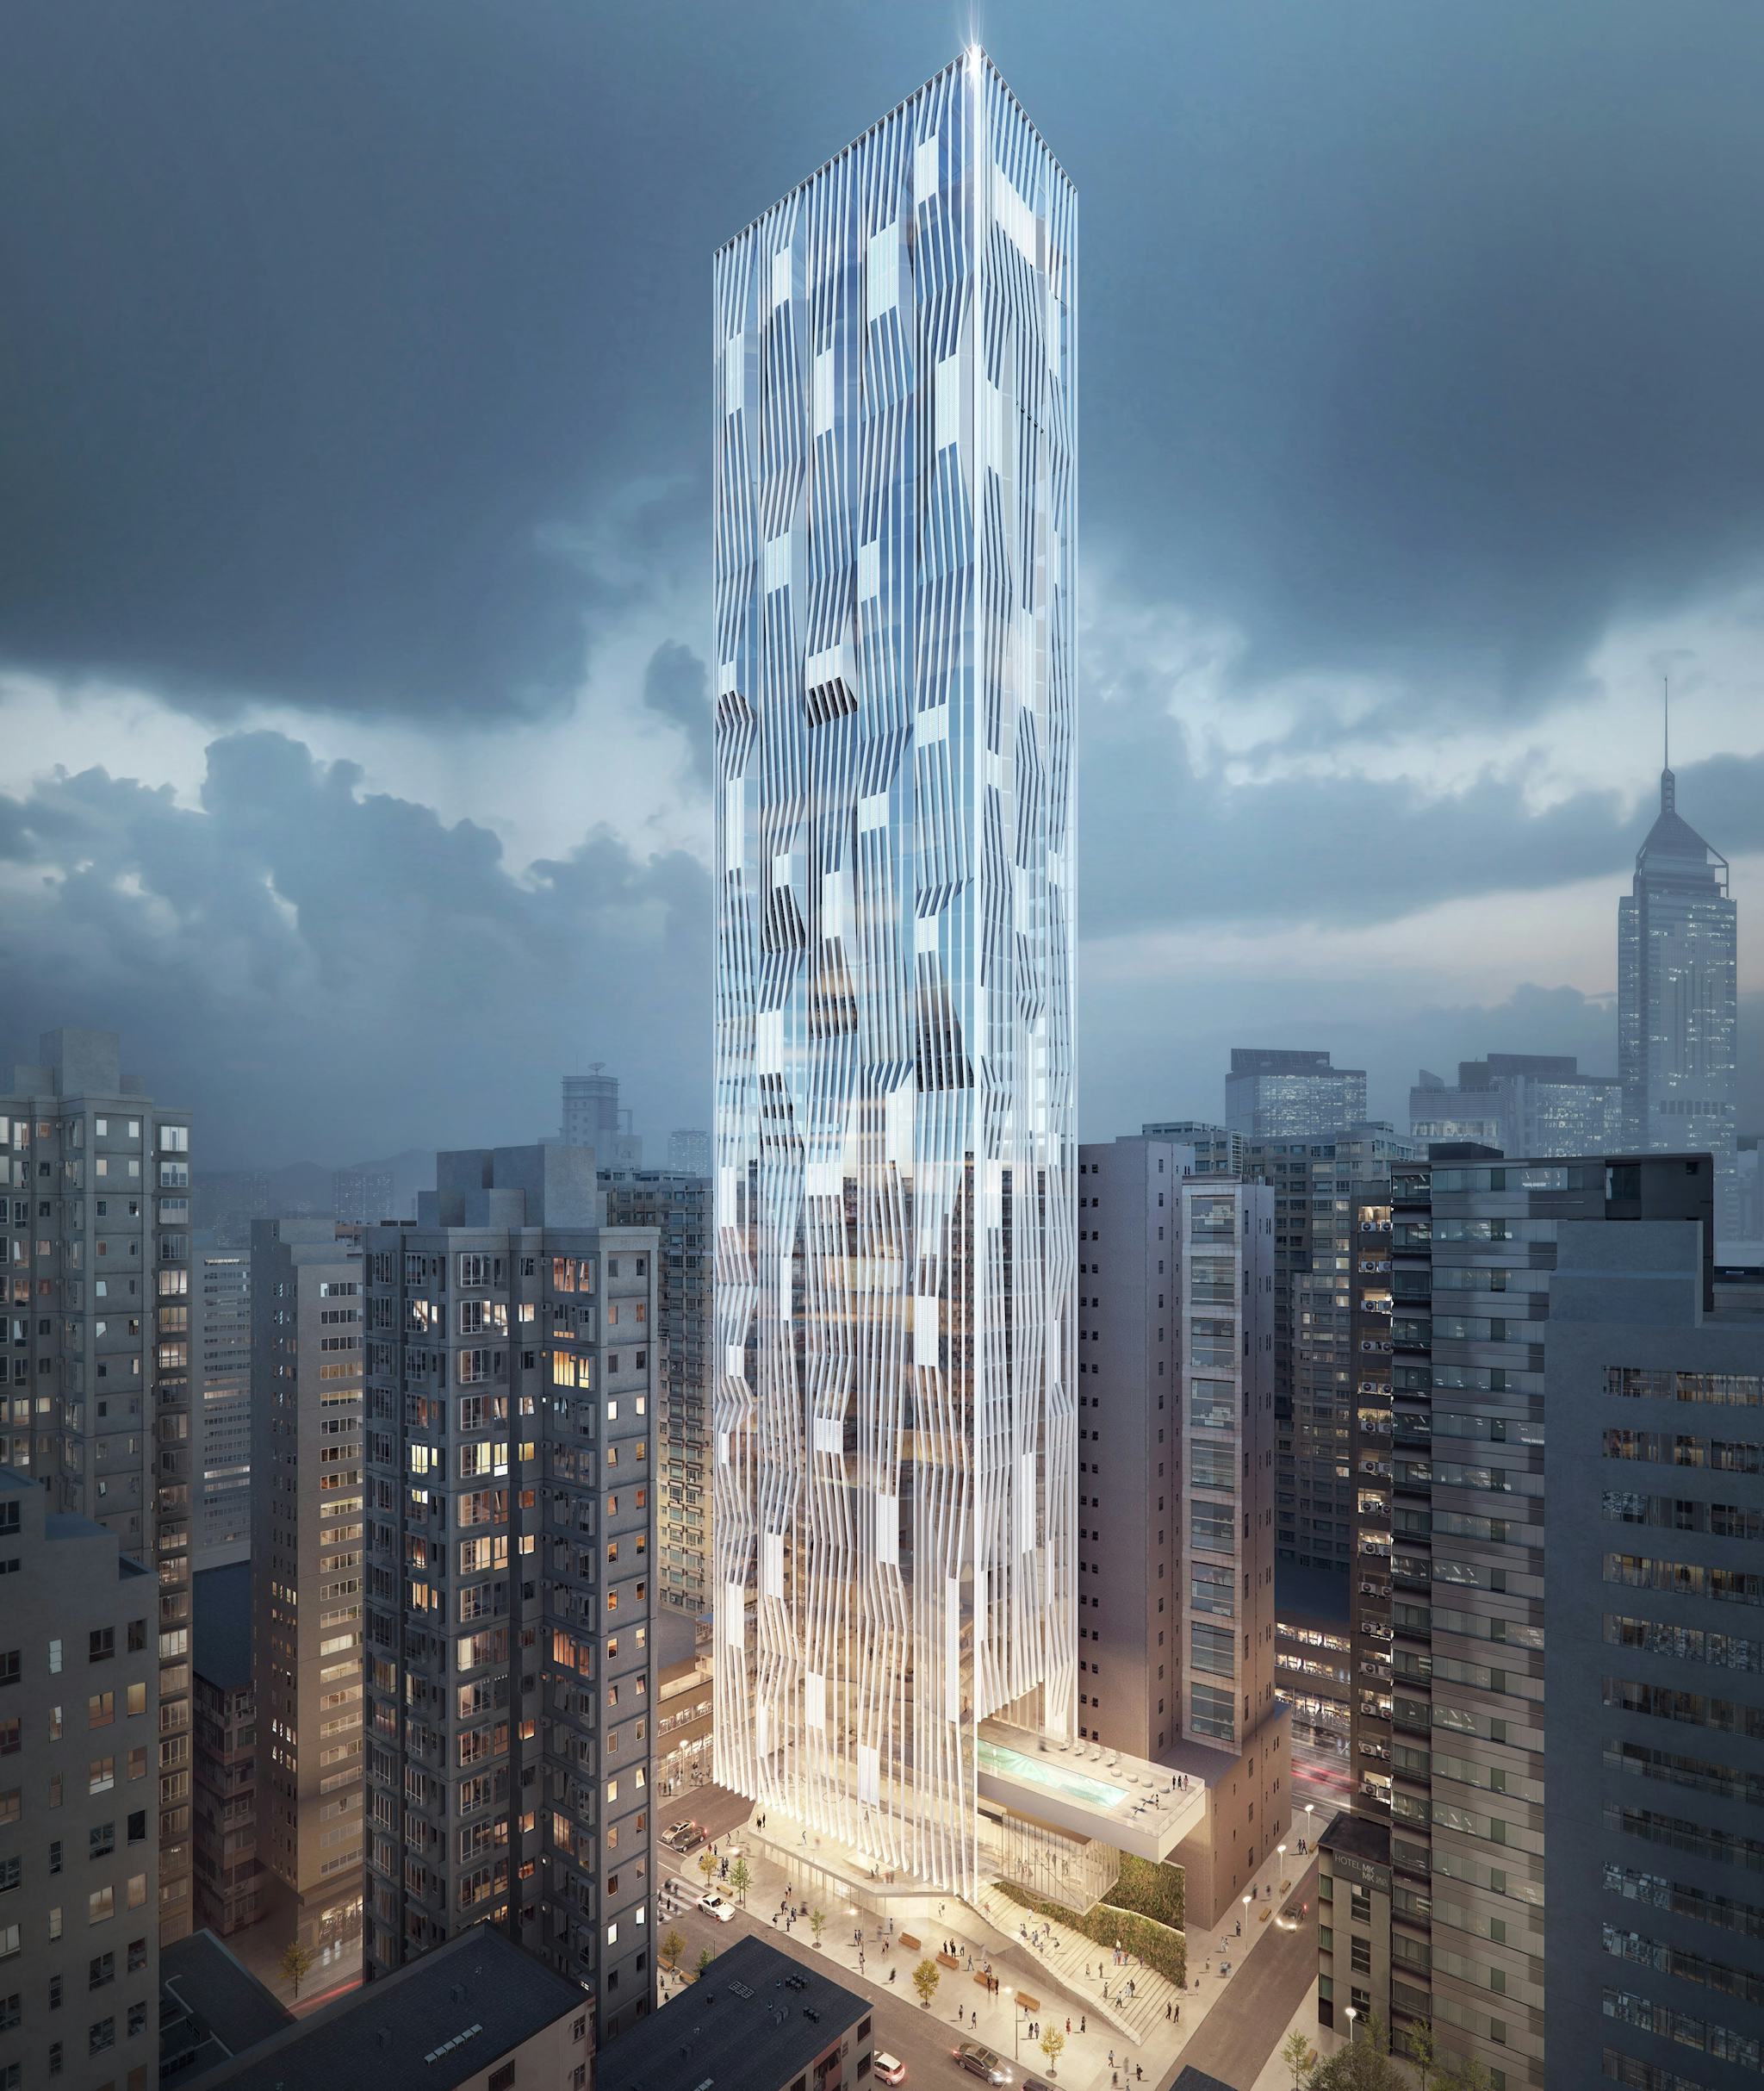 Hong Kong skyscraper - Architectural visualizations